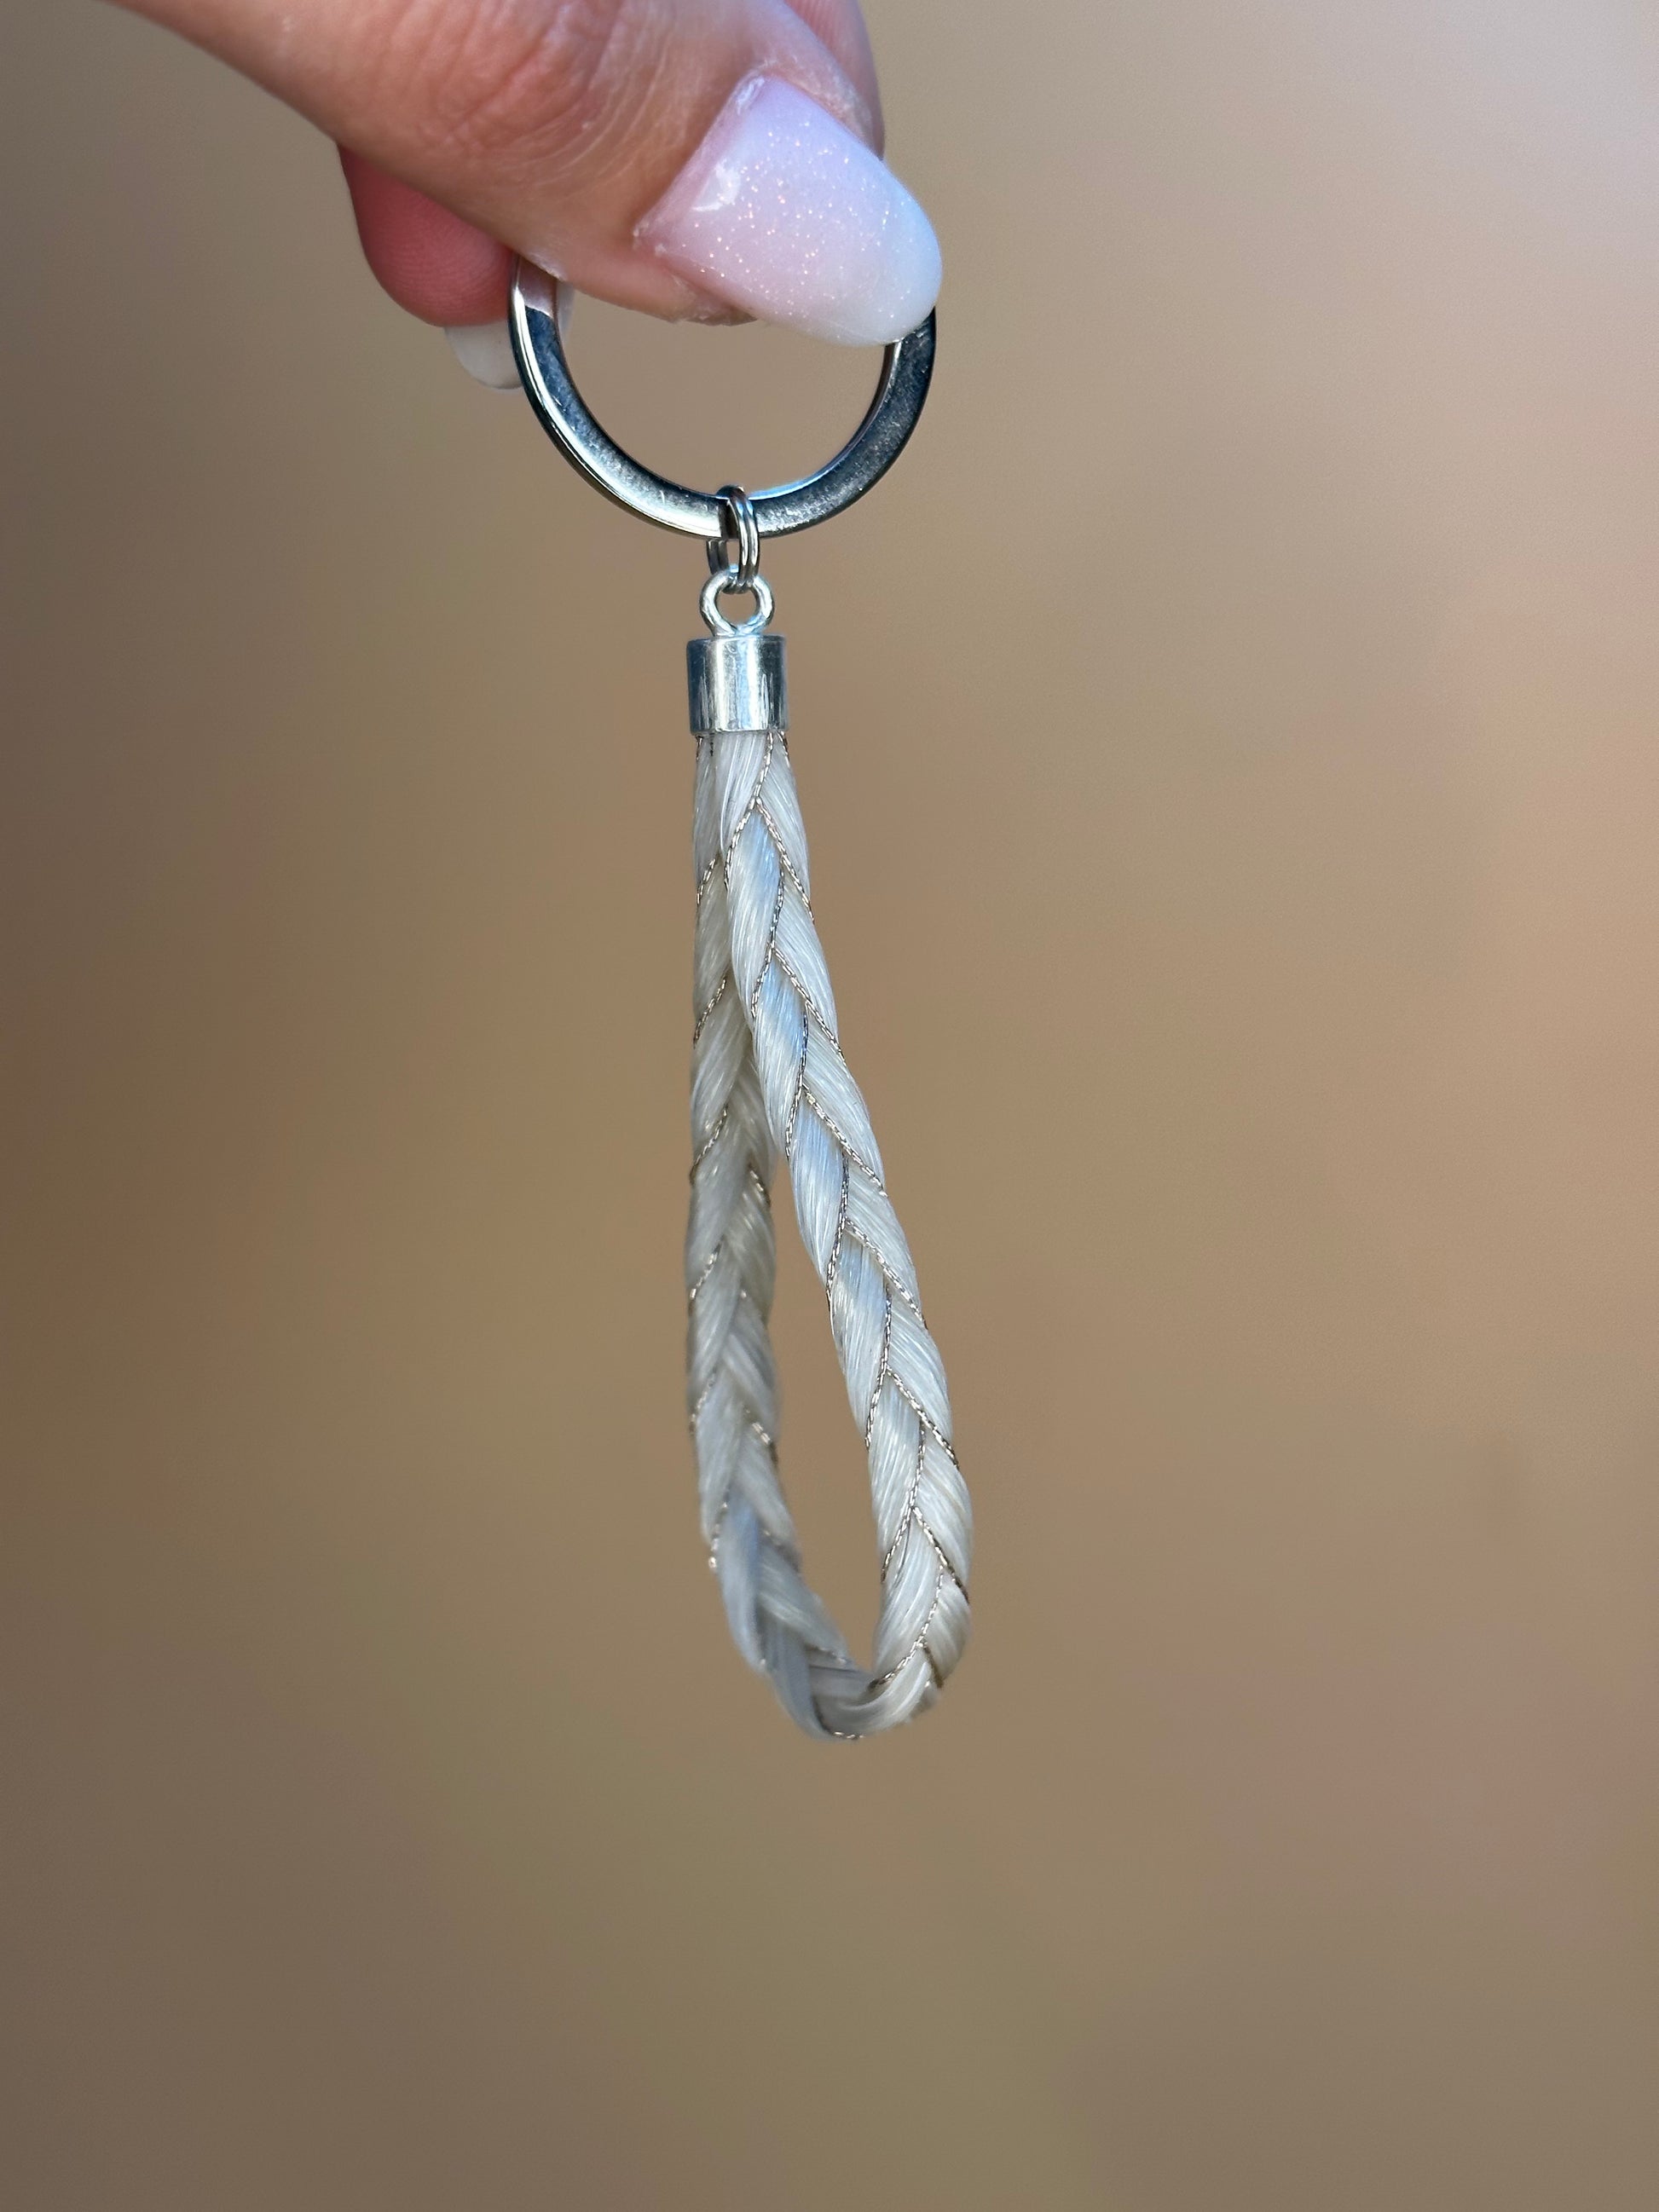 Porte-clefs « Boucle unique » – Les perles d'Ïvy